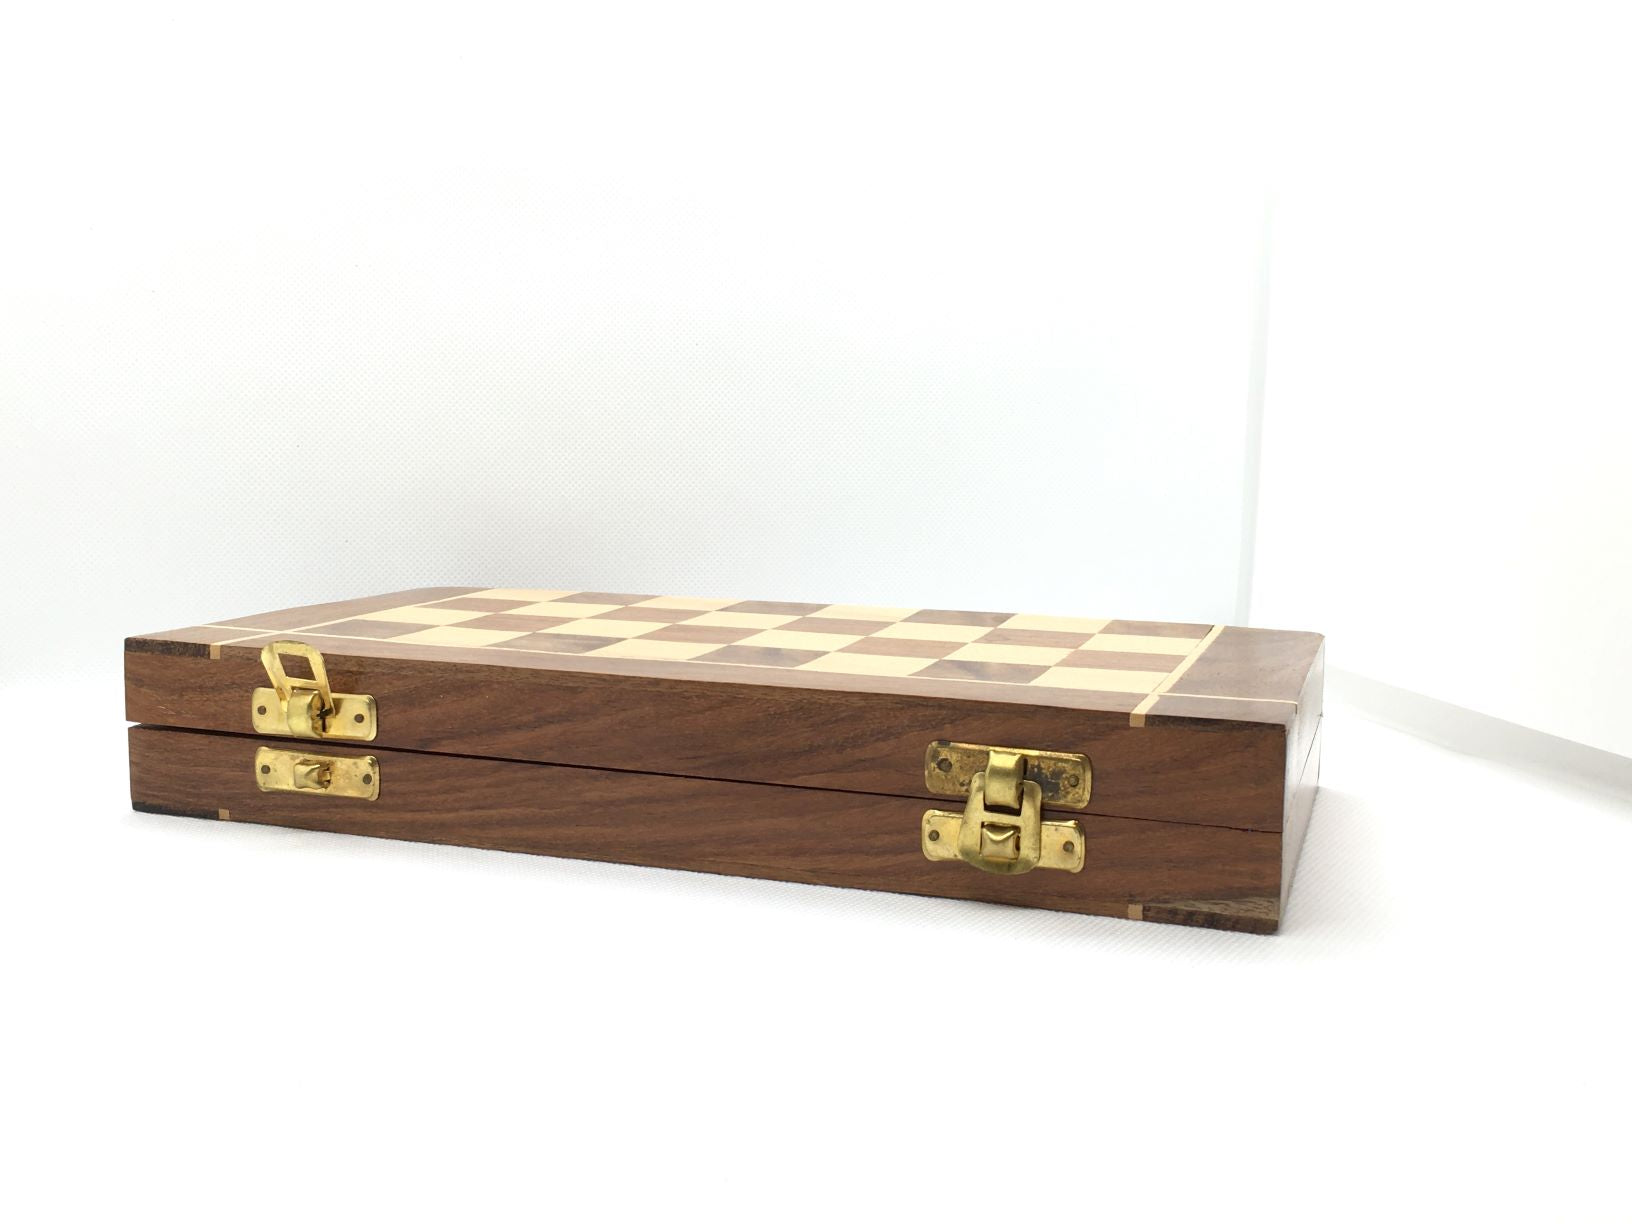 Scacchiera in legno intarsiato chiudibile con pedoni in legno realizzati a mano. Dimensioni: aperta cm 25 x 25 x 2; chiusa cm 25 x 12,5 x 4